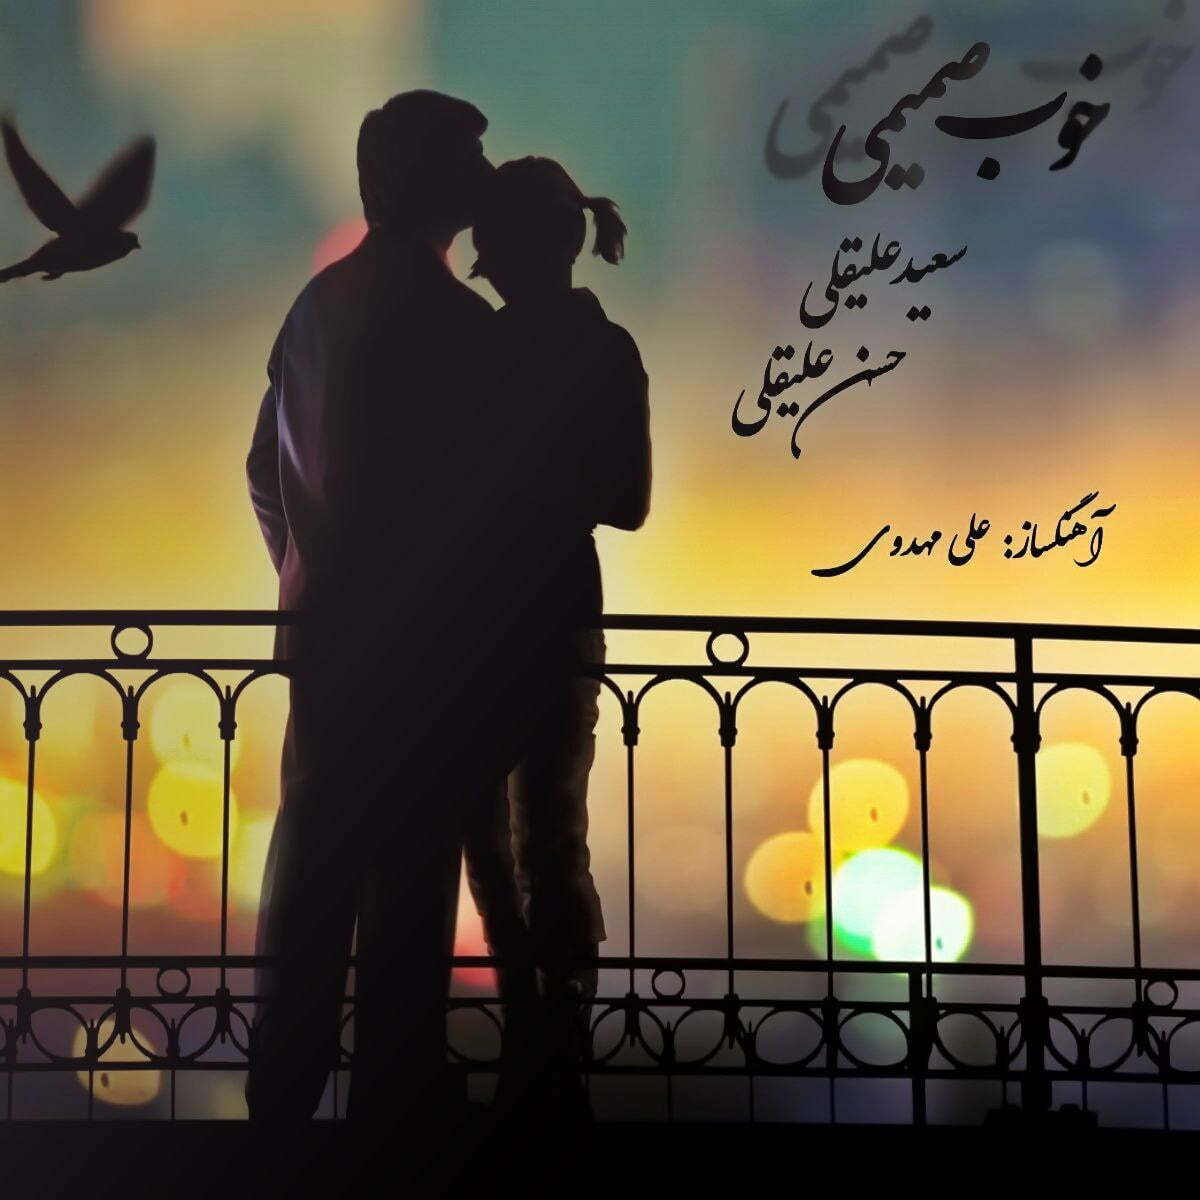 دانلود آهنگ جدید سعید علیقلی و حسن علیقلی با عنوان خوب صمیمی